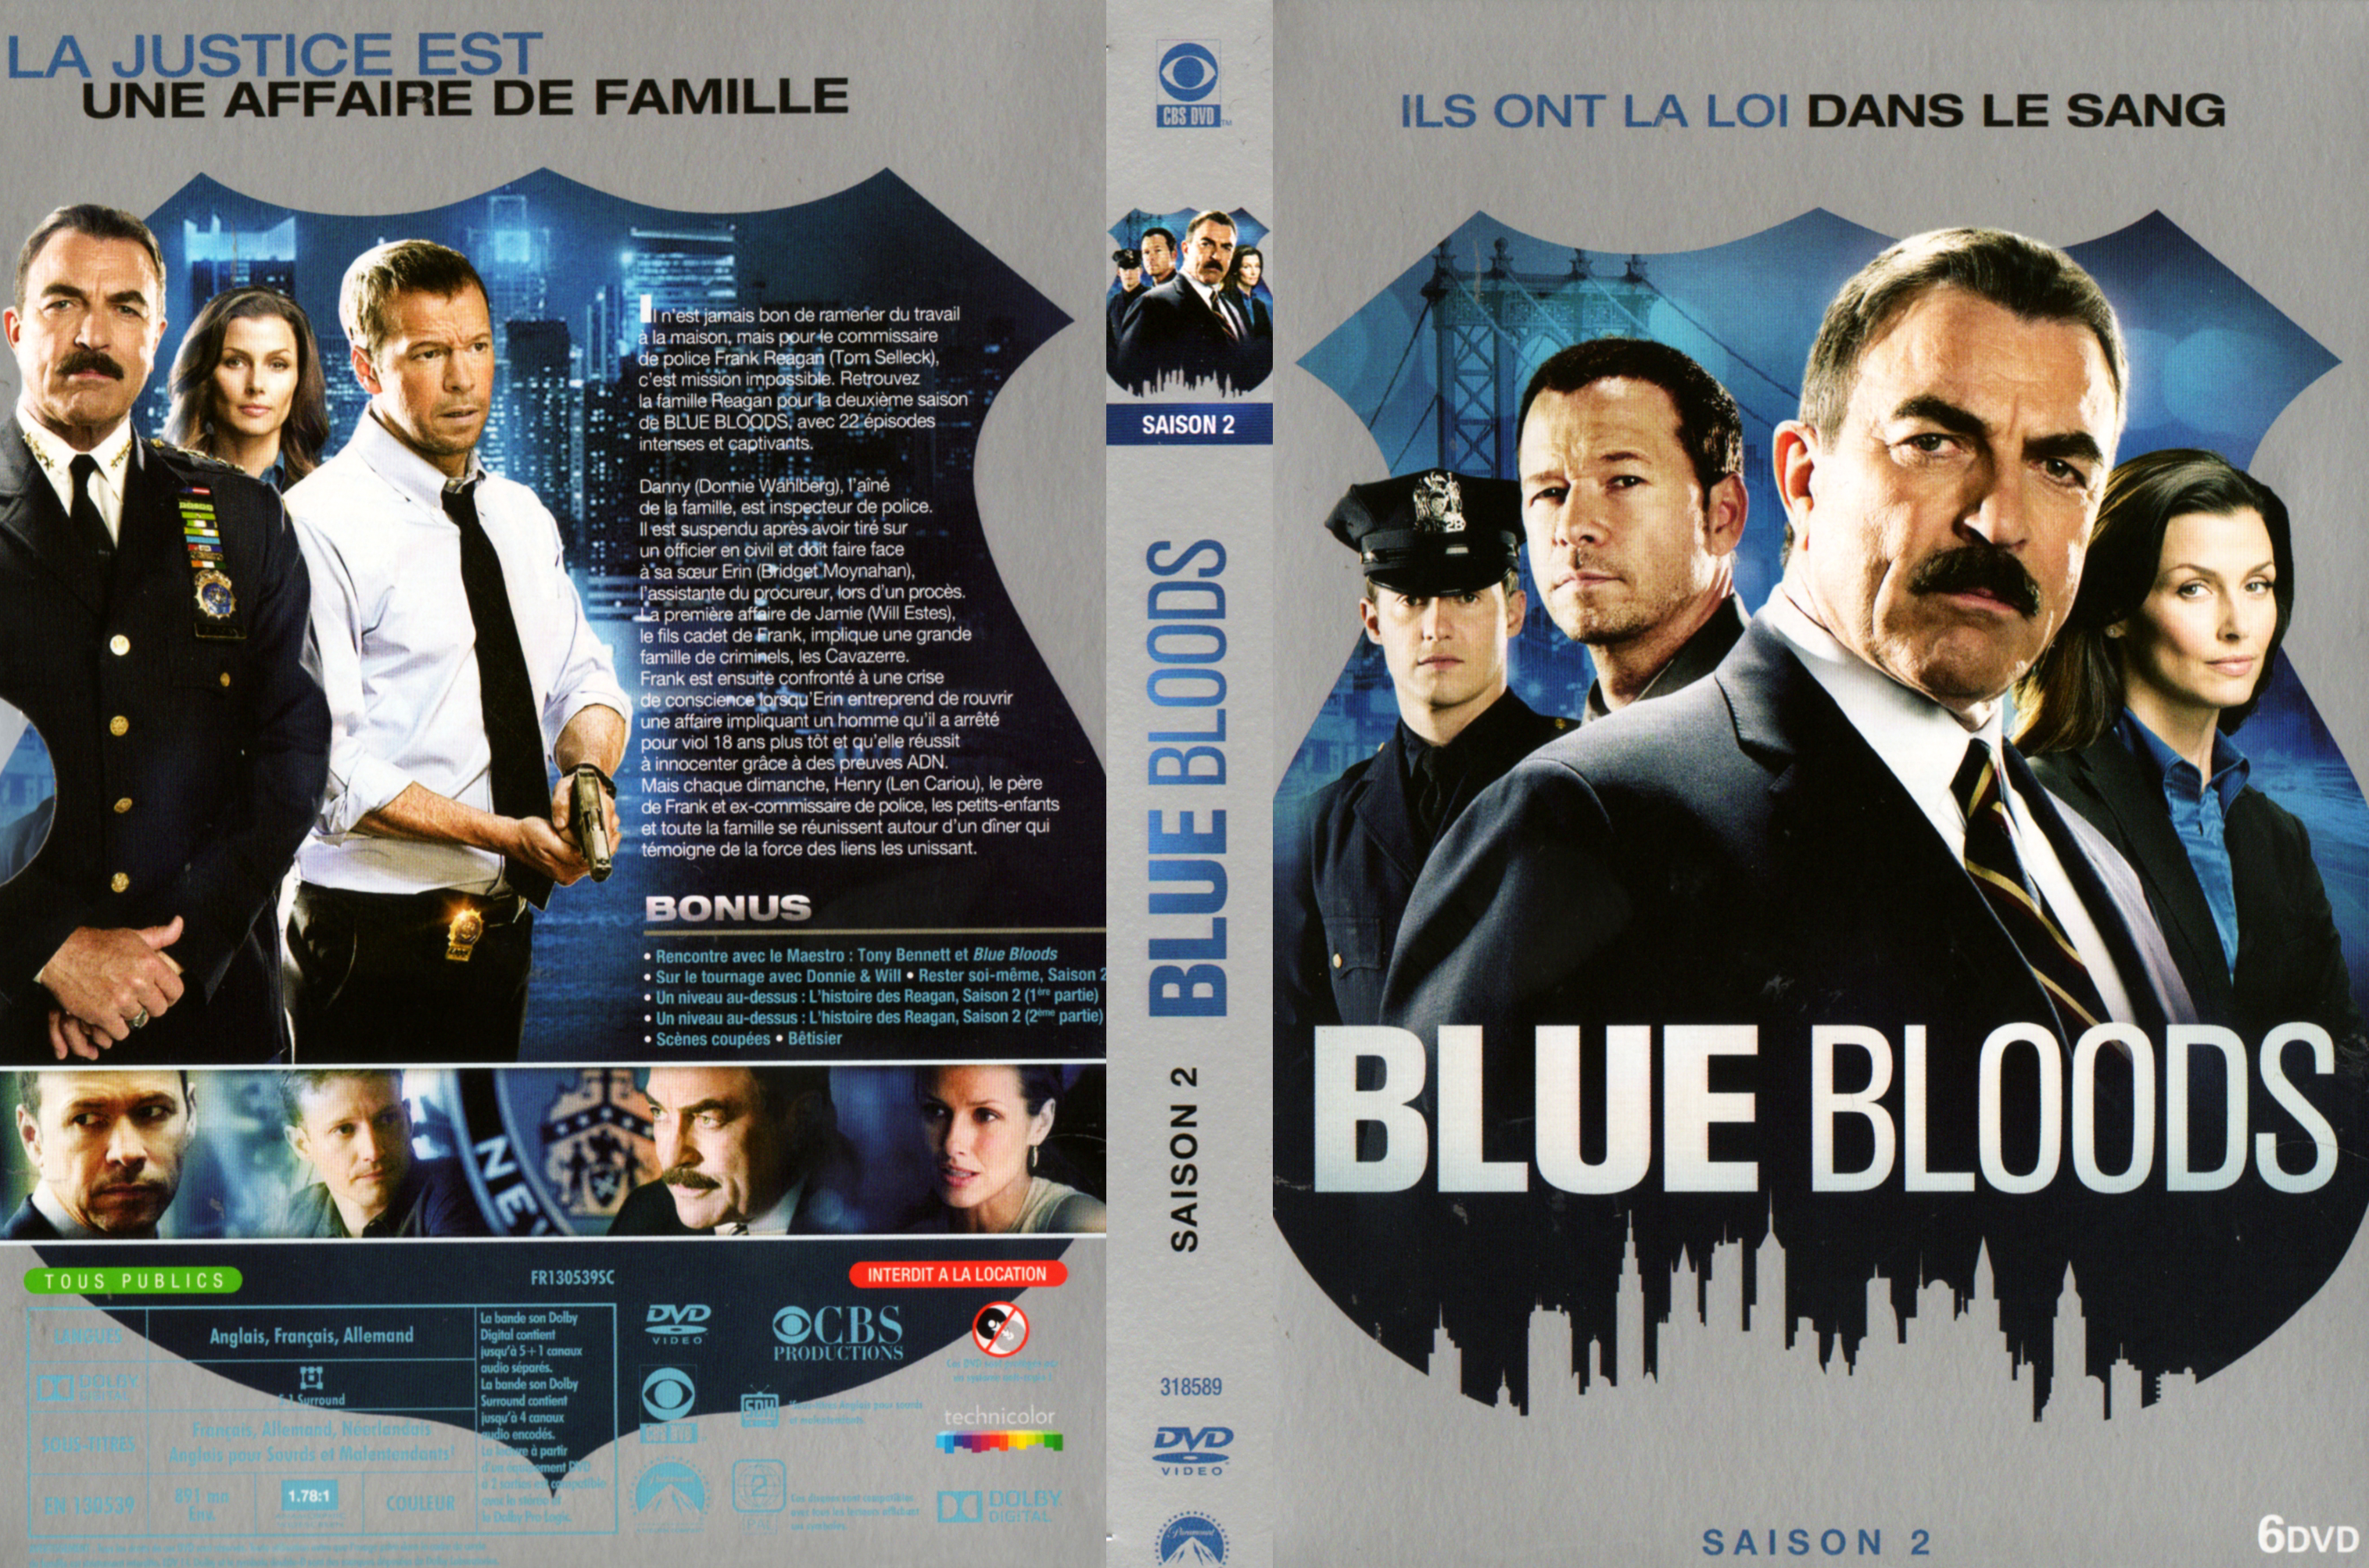 Jaquette DVD Blue Bloods saison 2